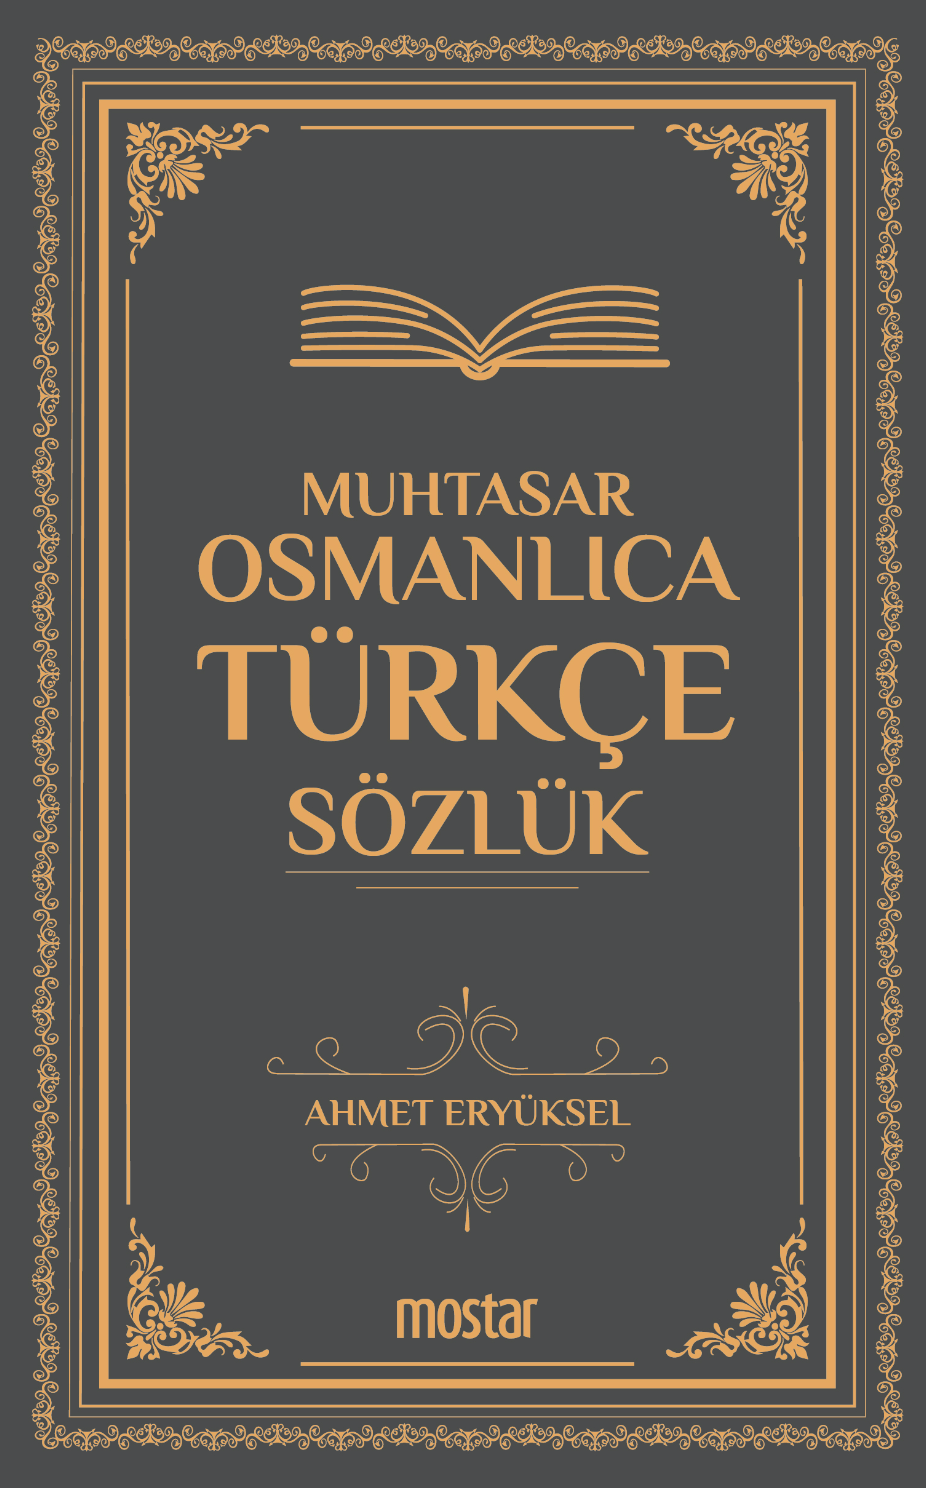 Muhtasar (Küçük) Osmanlıca Türkçe Sözlük		